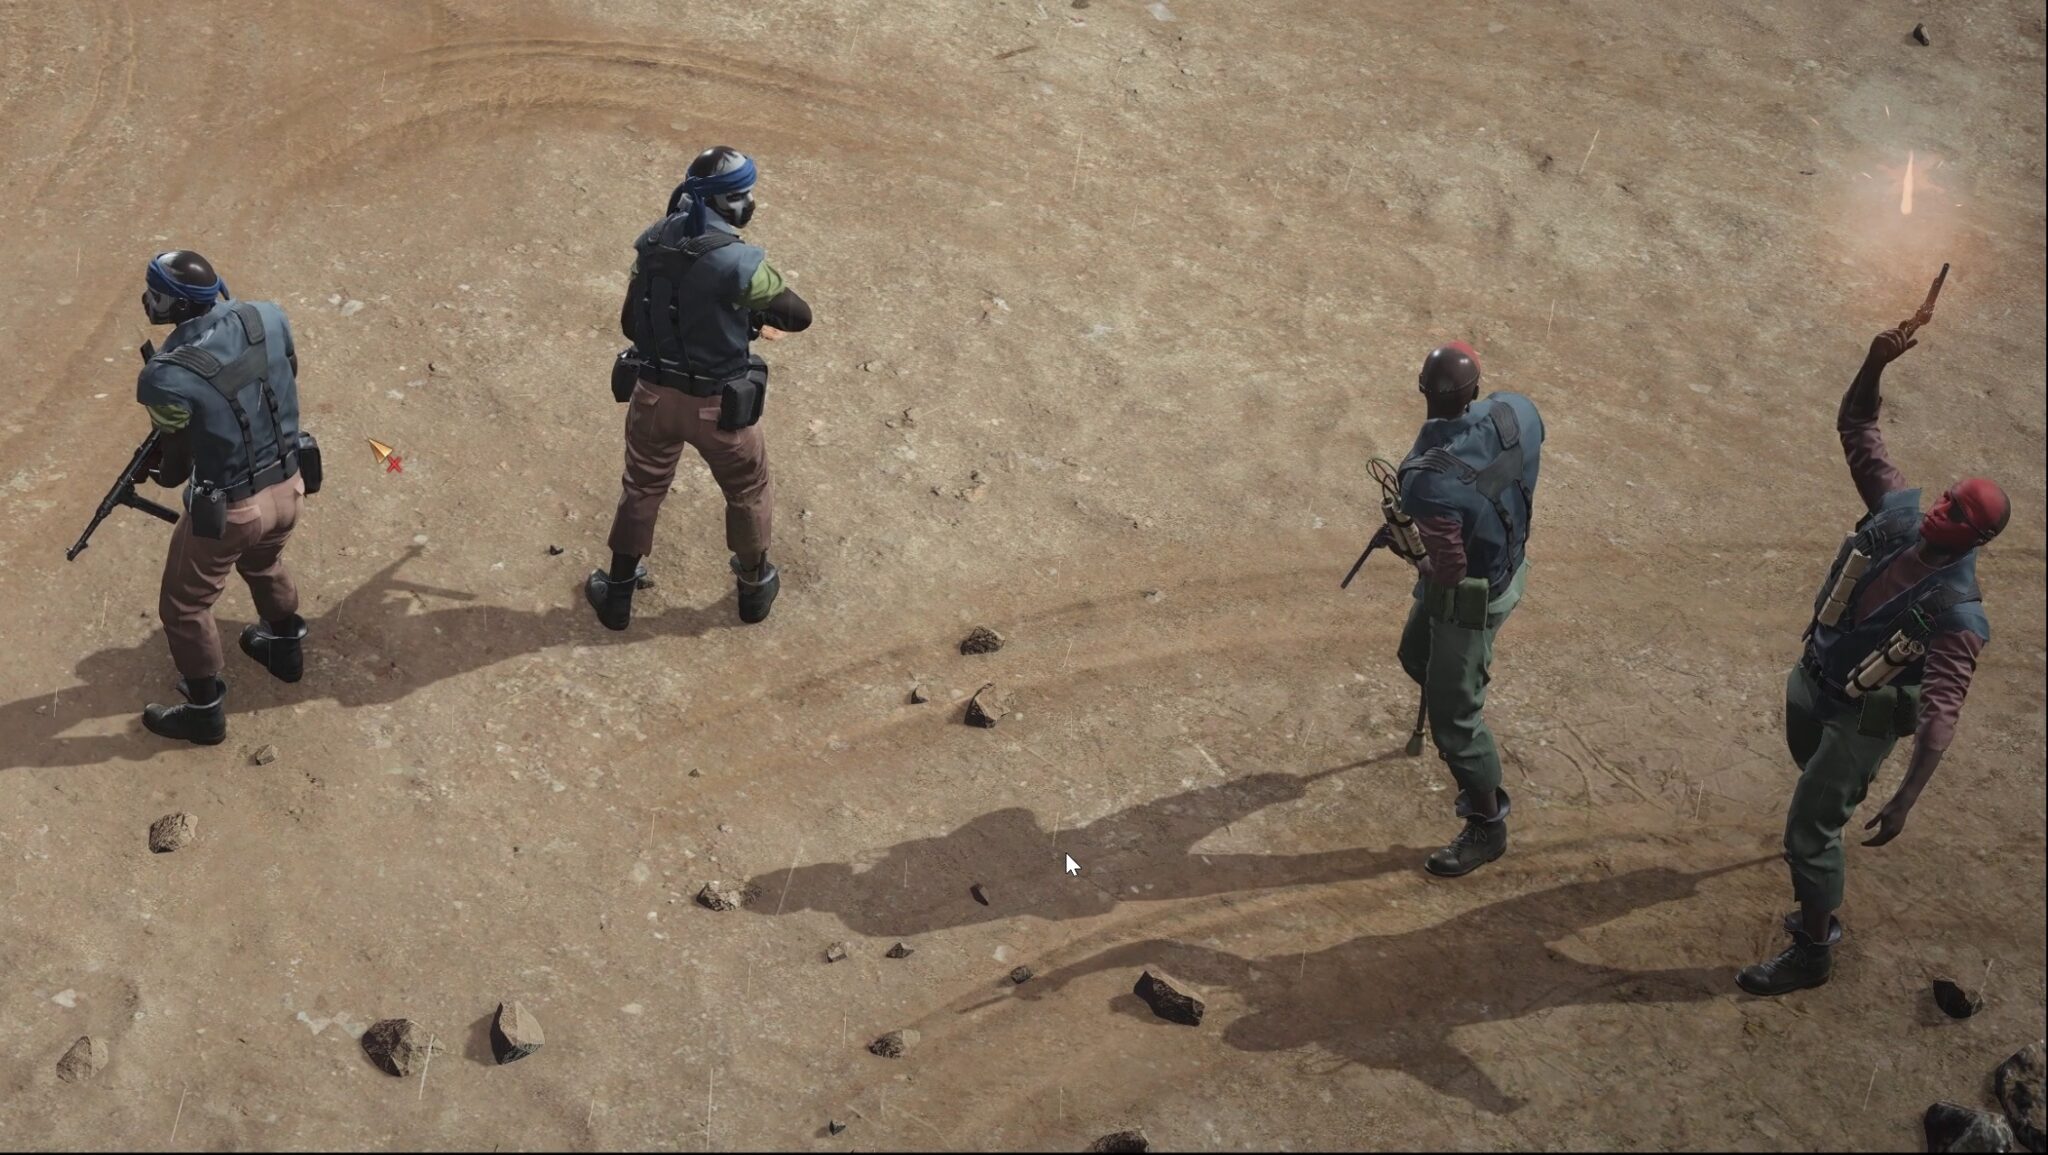 (Toma de aviso: ¡Alerta, vienen los mercenarios! Fíjate en detalles como las piernas protésicas de los dos combatientes de la derecha, que también llevan cartuchos de dinamita -en el juego, un símbolo de granada lo advierte-)